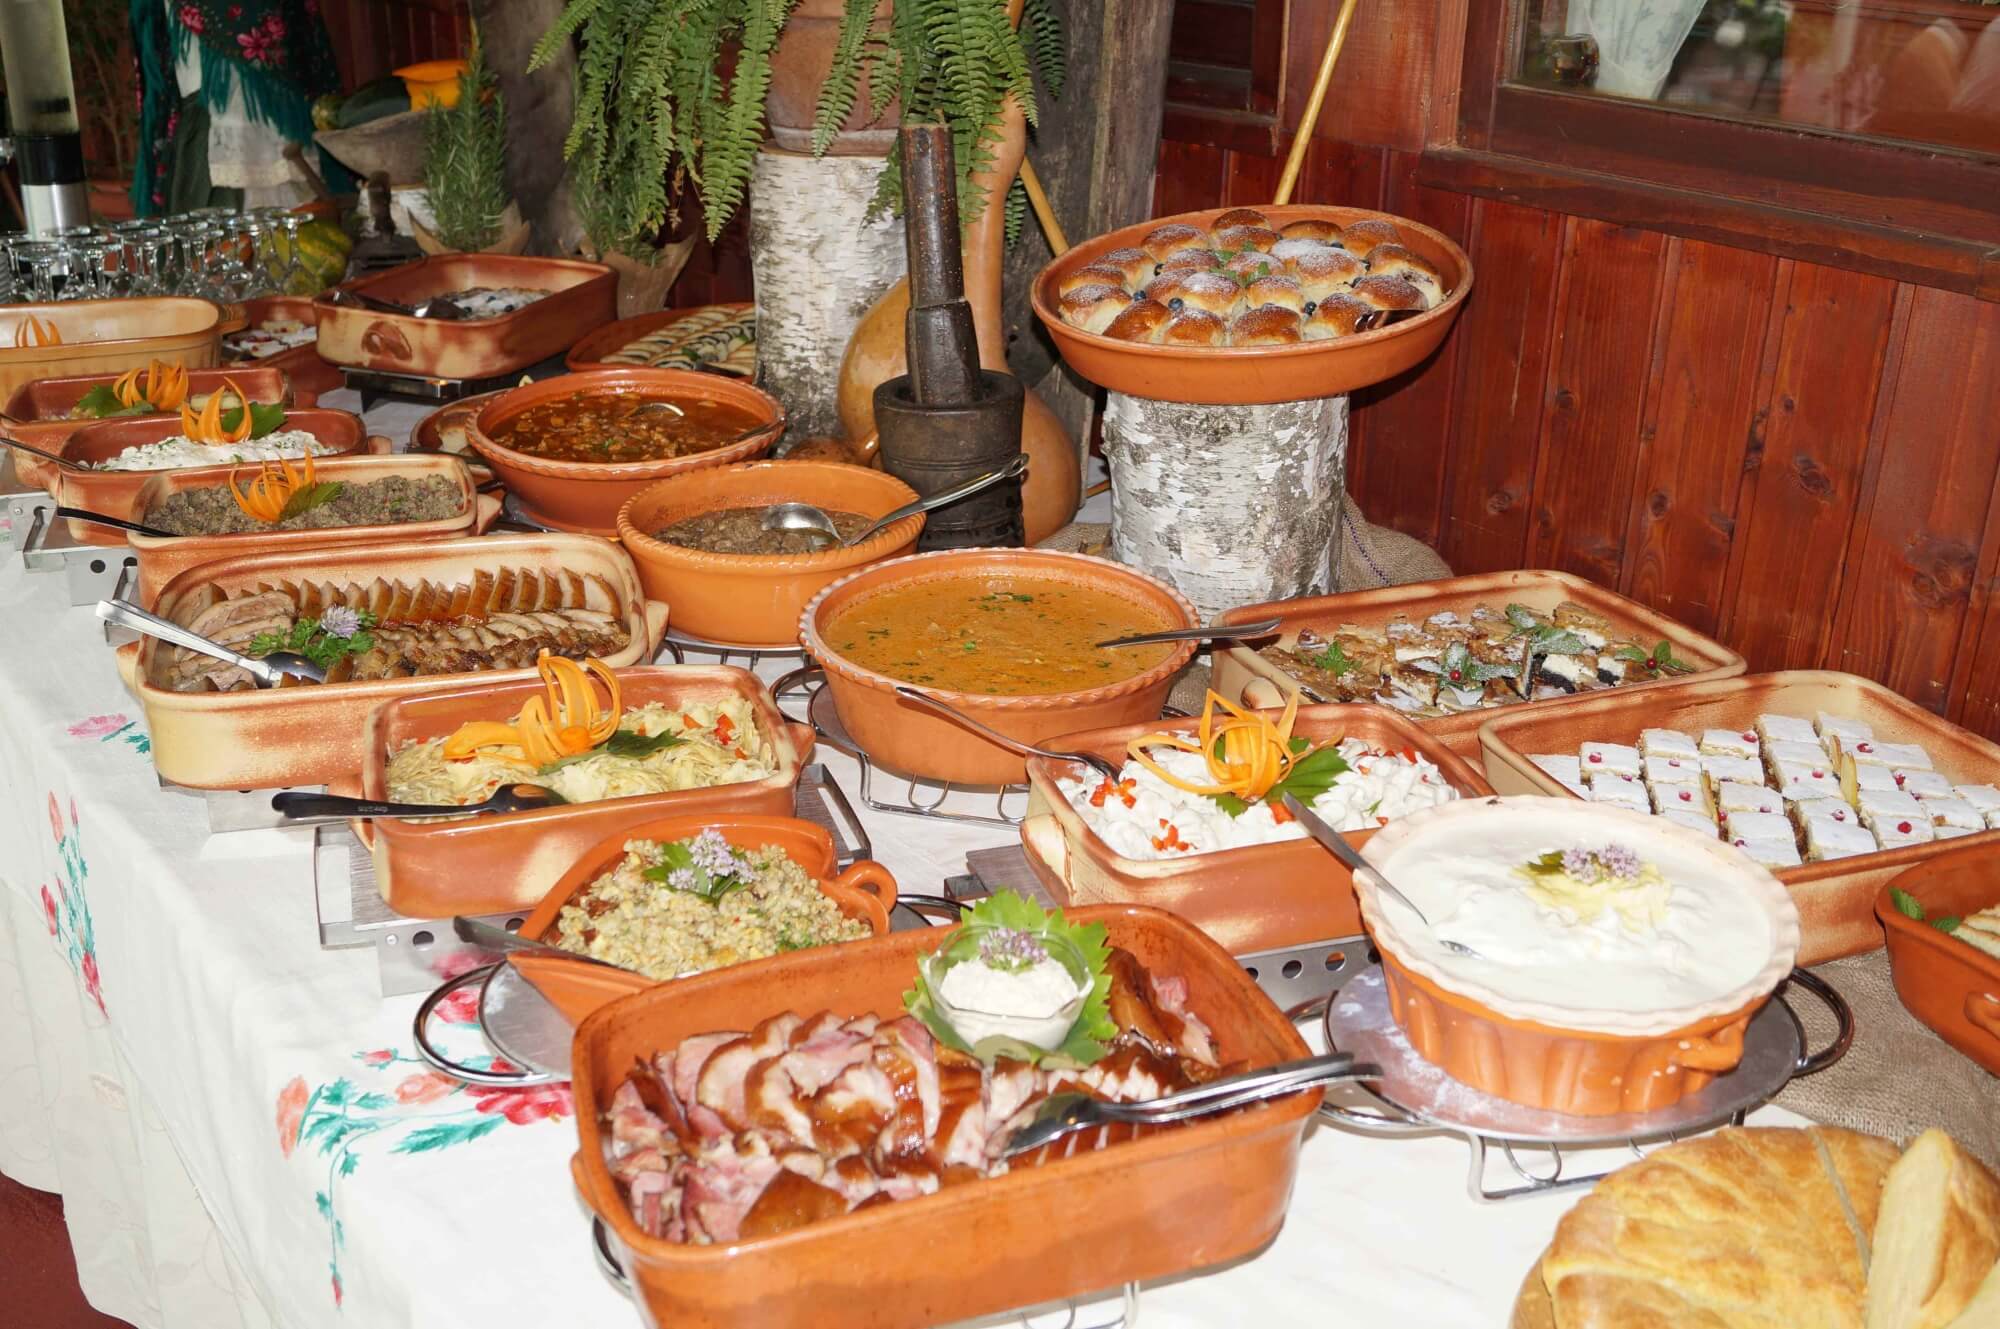 6_-_Me_imurje_-_Traditional_Me_imurje_table_at_etno_restaurant_Me_imurski_dvori.jpg